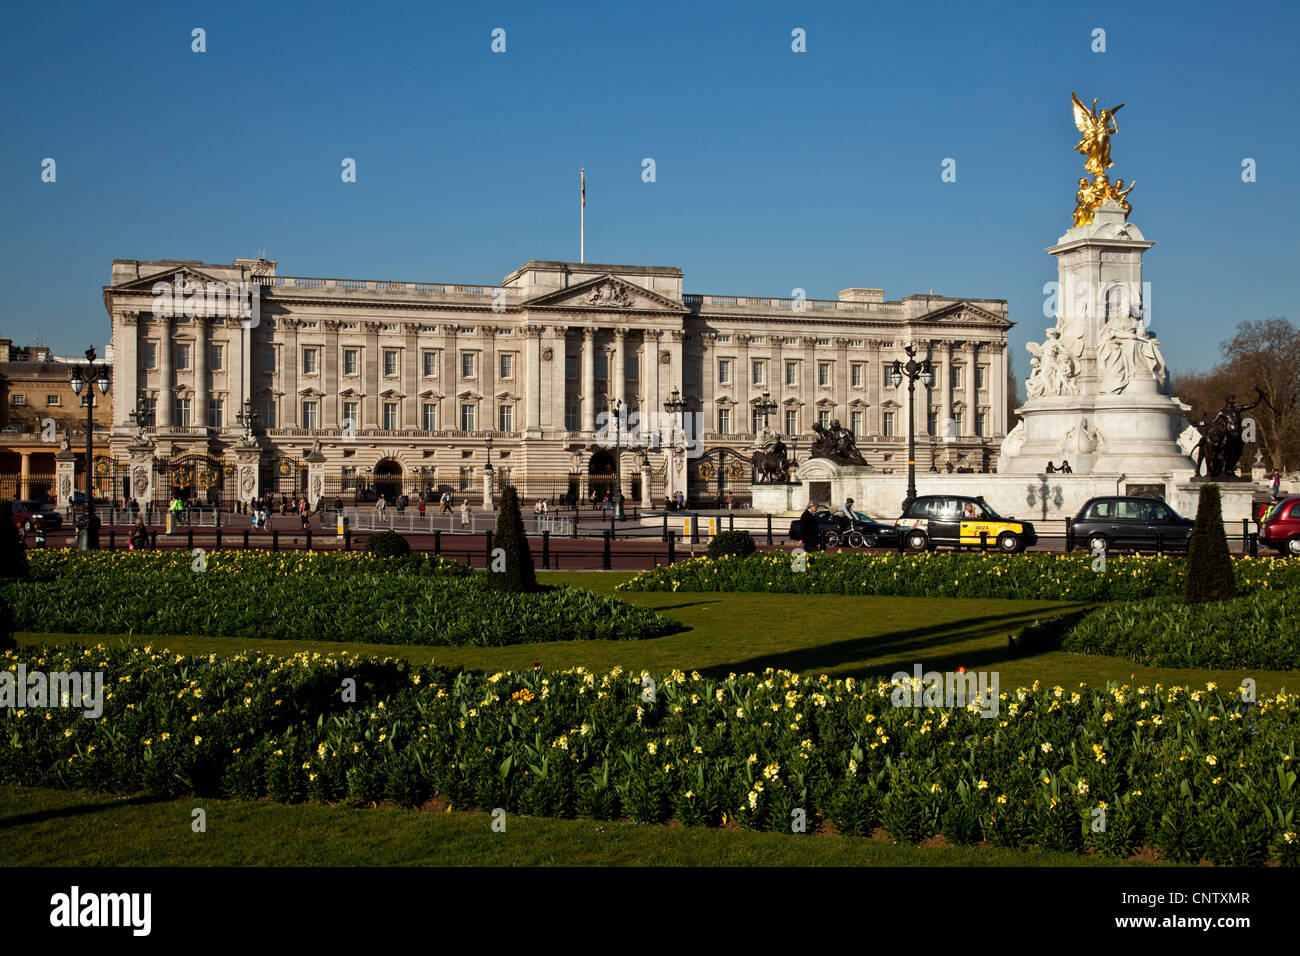 Le palais de Buckingham et de l'Édifice commémoratif Victoria, Londres, Angleterre Banque D'Images